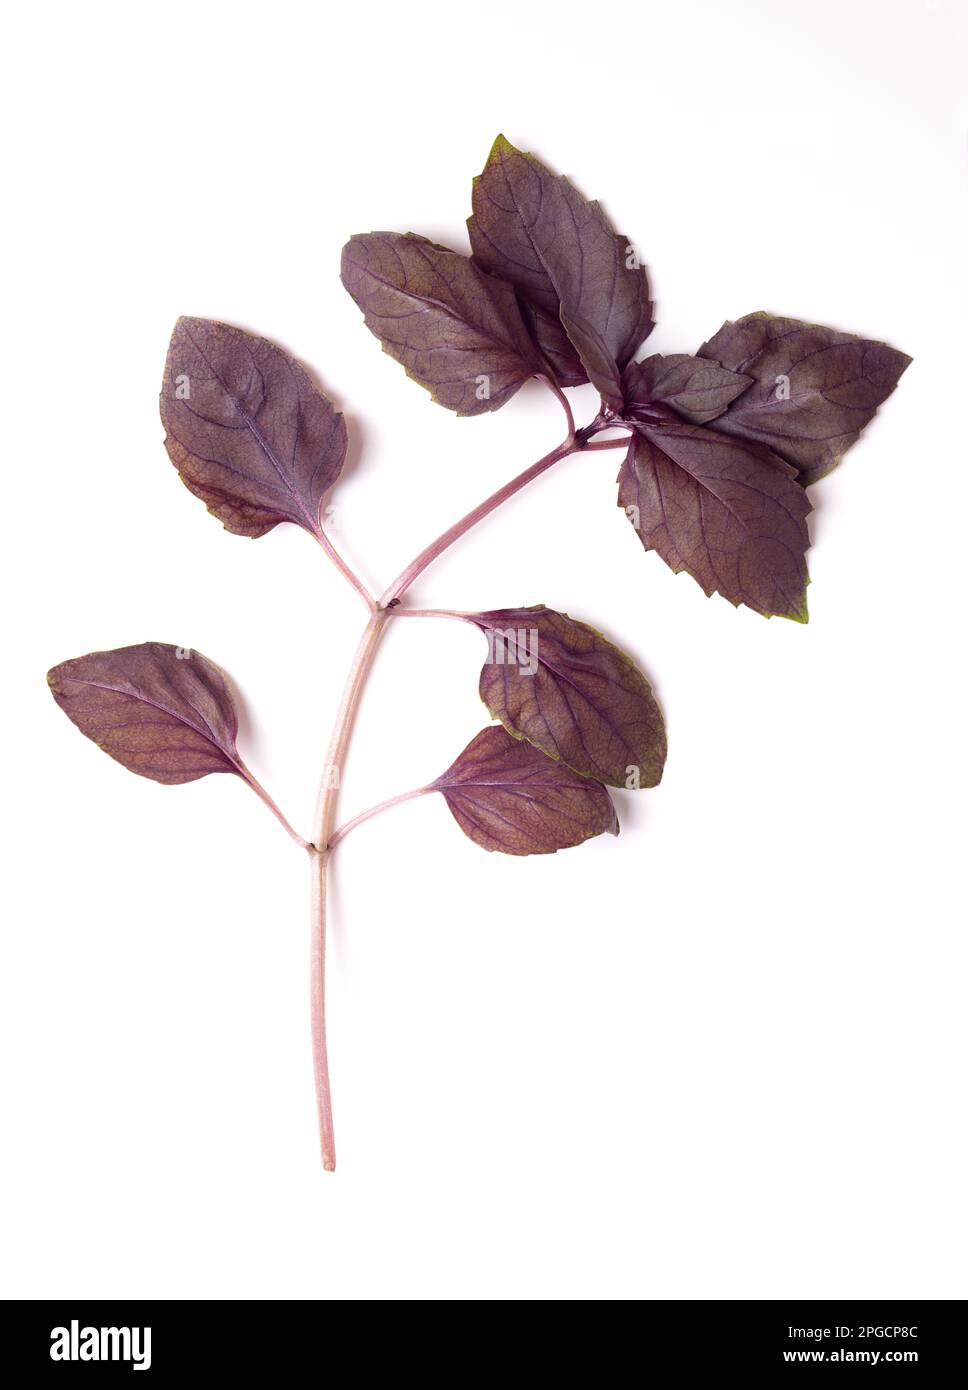 Ramo di basilico rosso rubin dall'alto. Fusto con foglie fresche di Ocimum basicum purpurascens, una variante di basilico dolce, con foglie rossicce-viola. Foto Stock